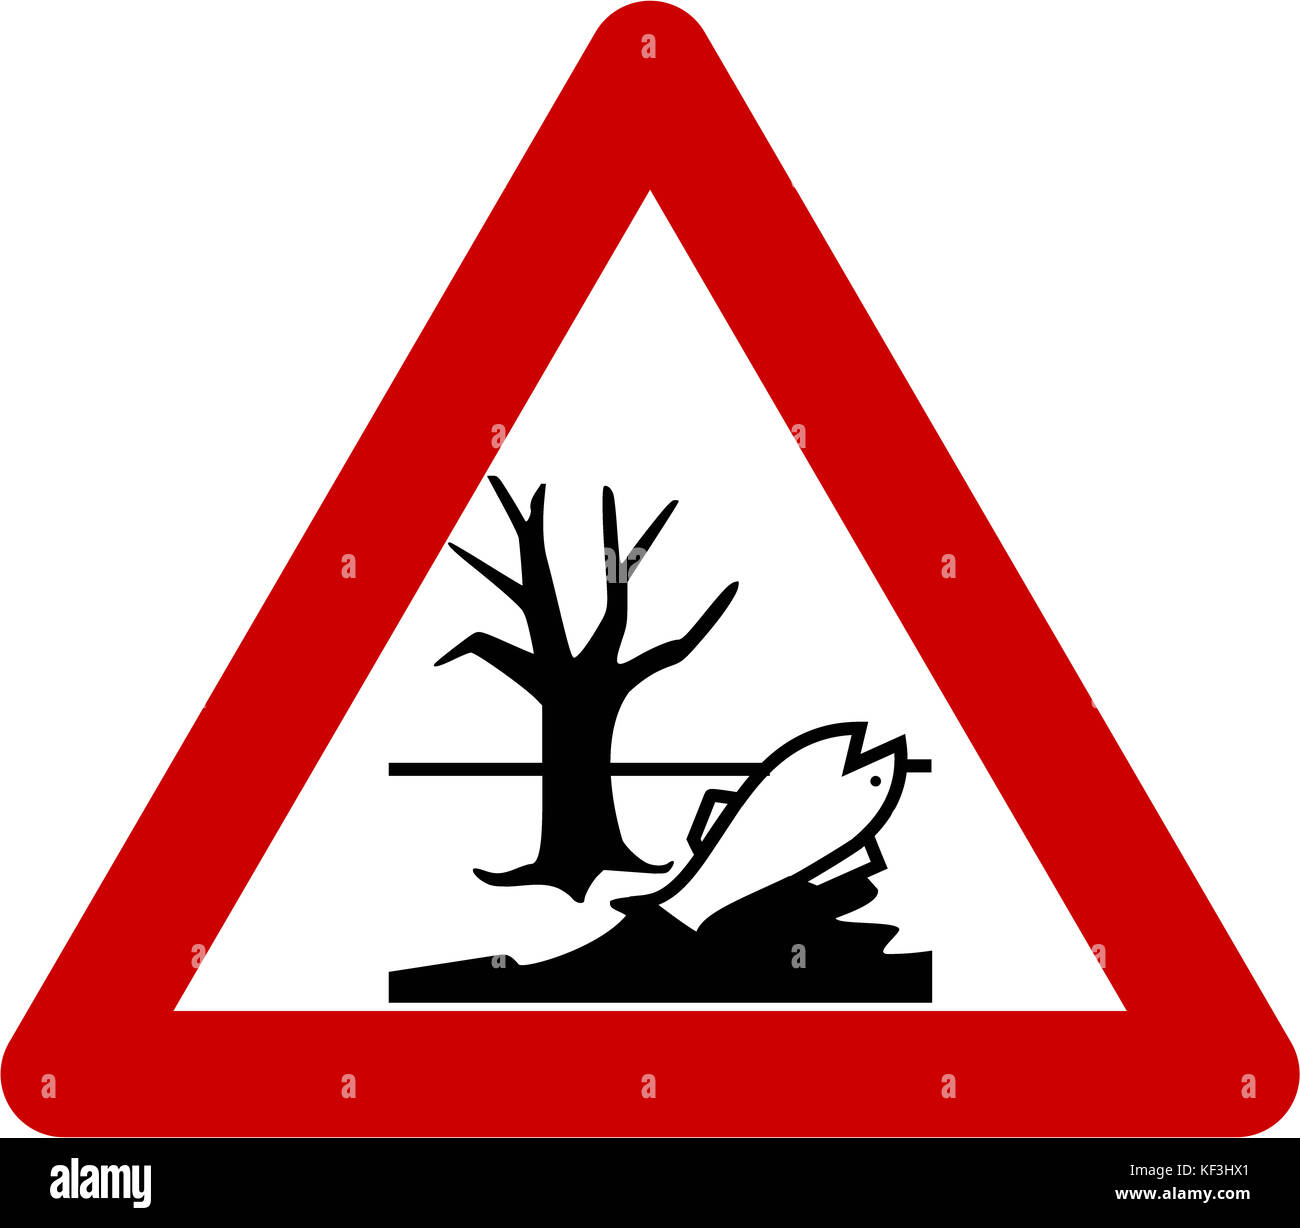 Señal de advertencia con sustancias químicas nocivas símbolo Fotografía de  stock - Alamy